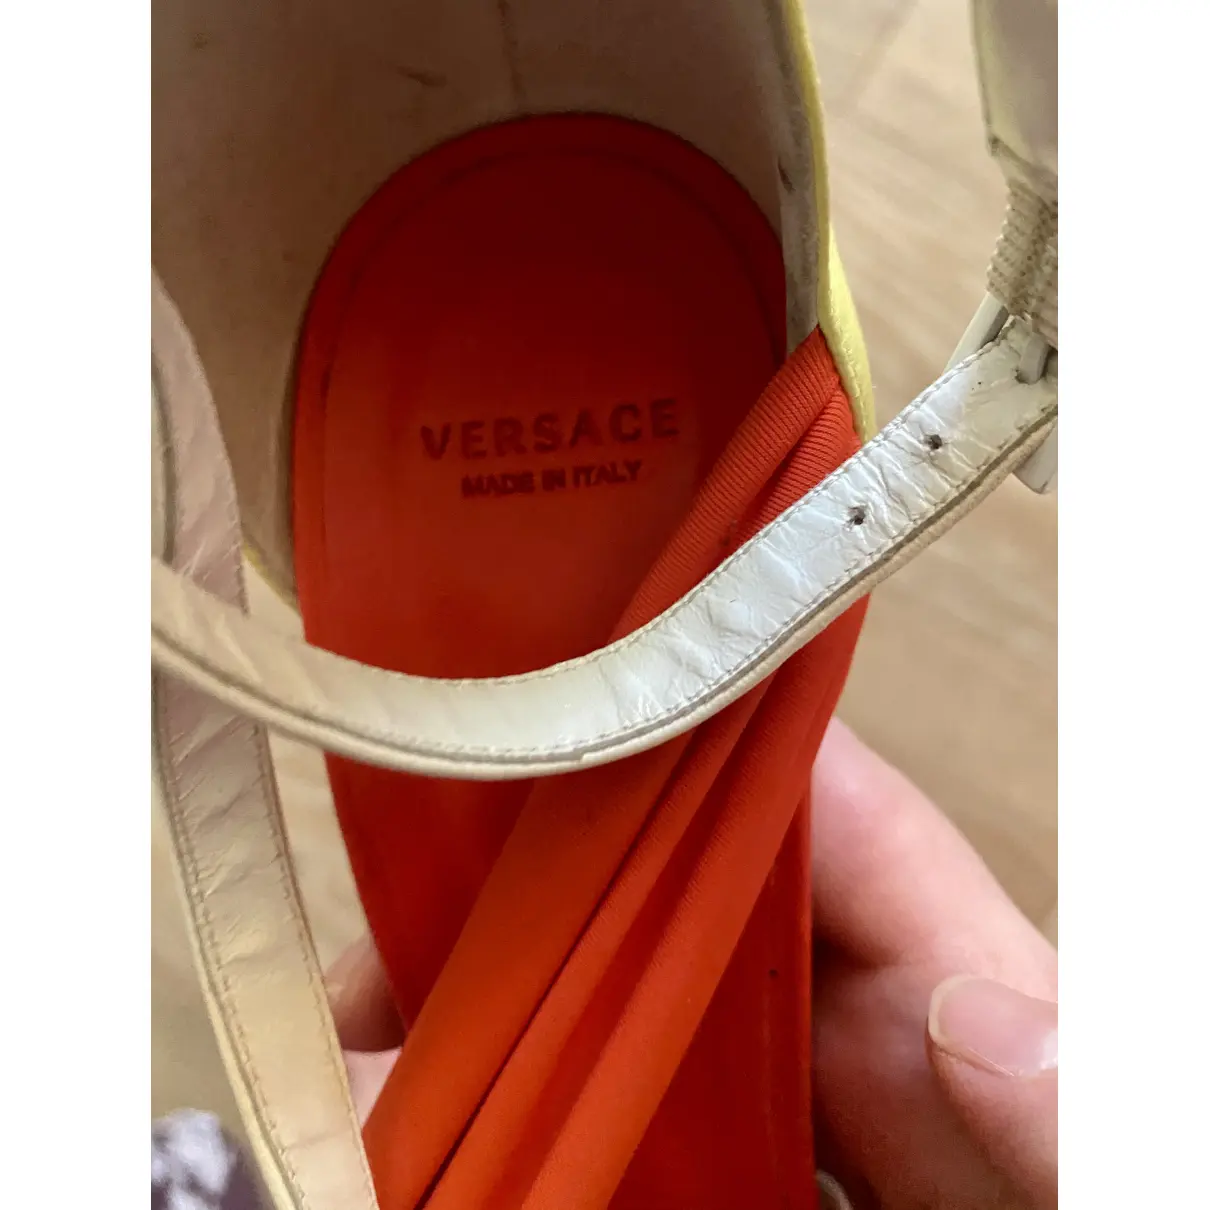 Buy Versace Cloth sandals online